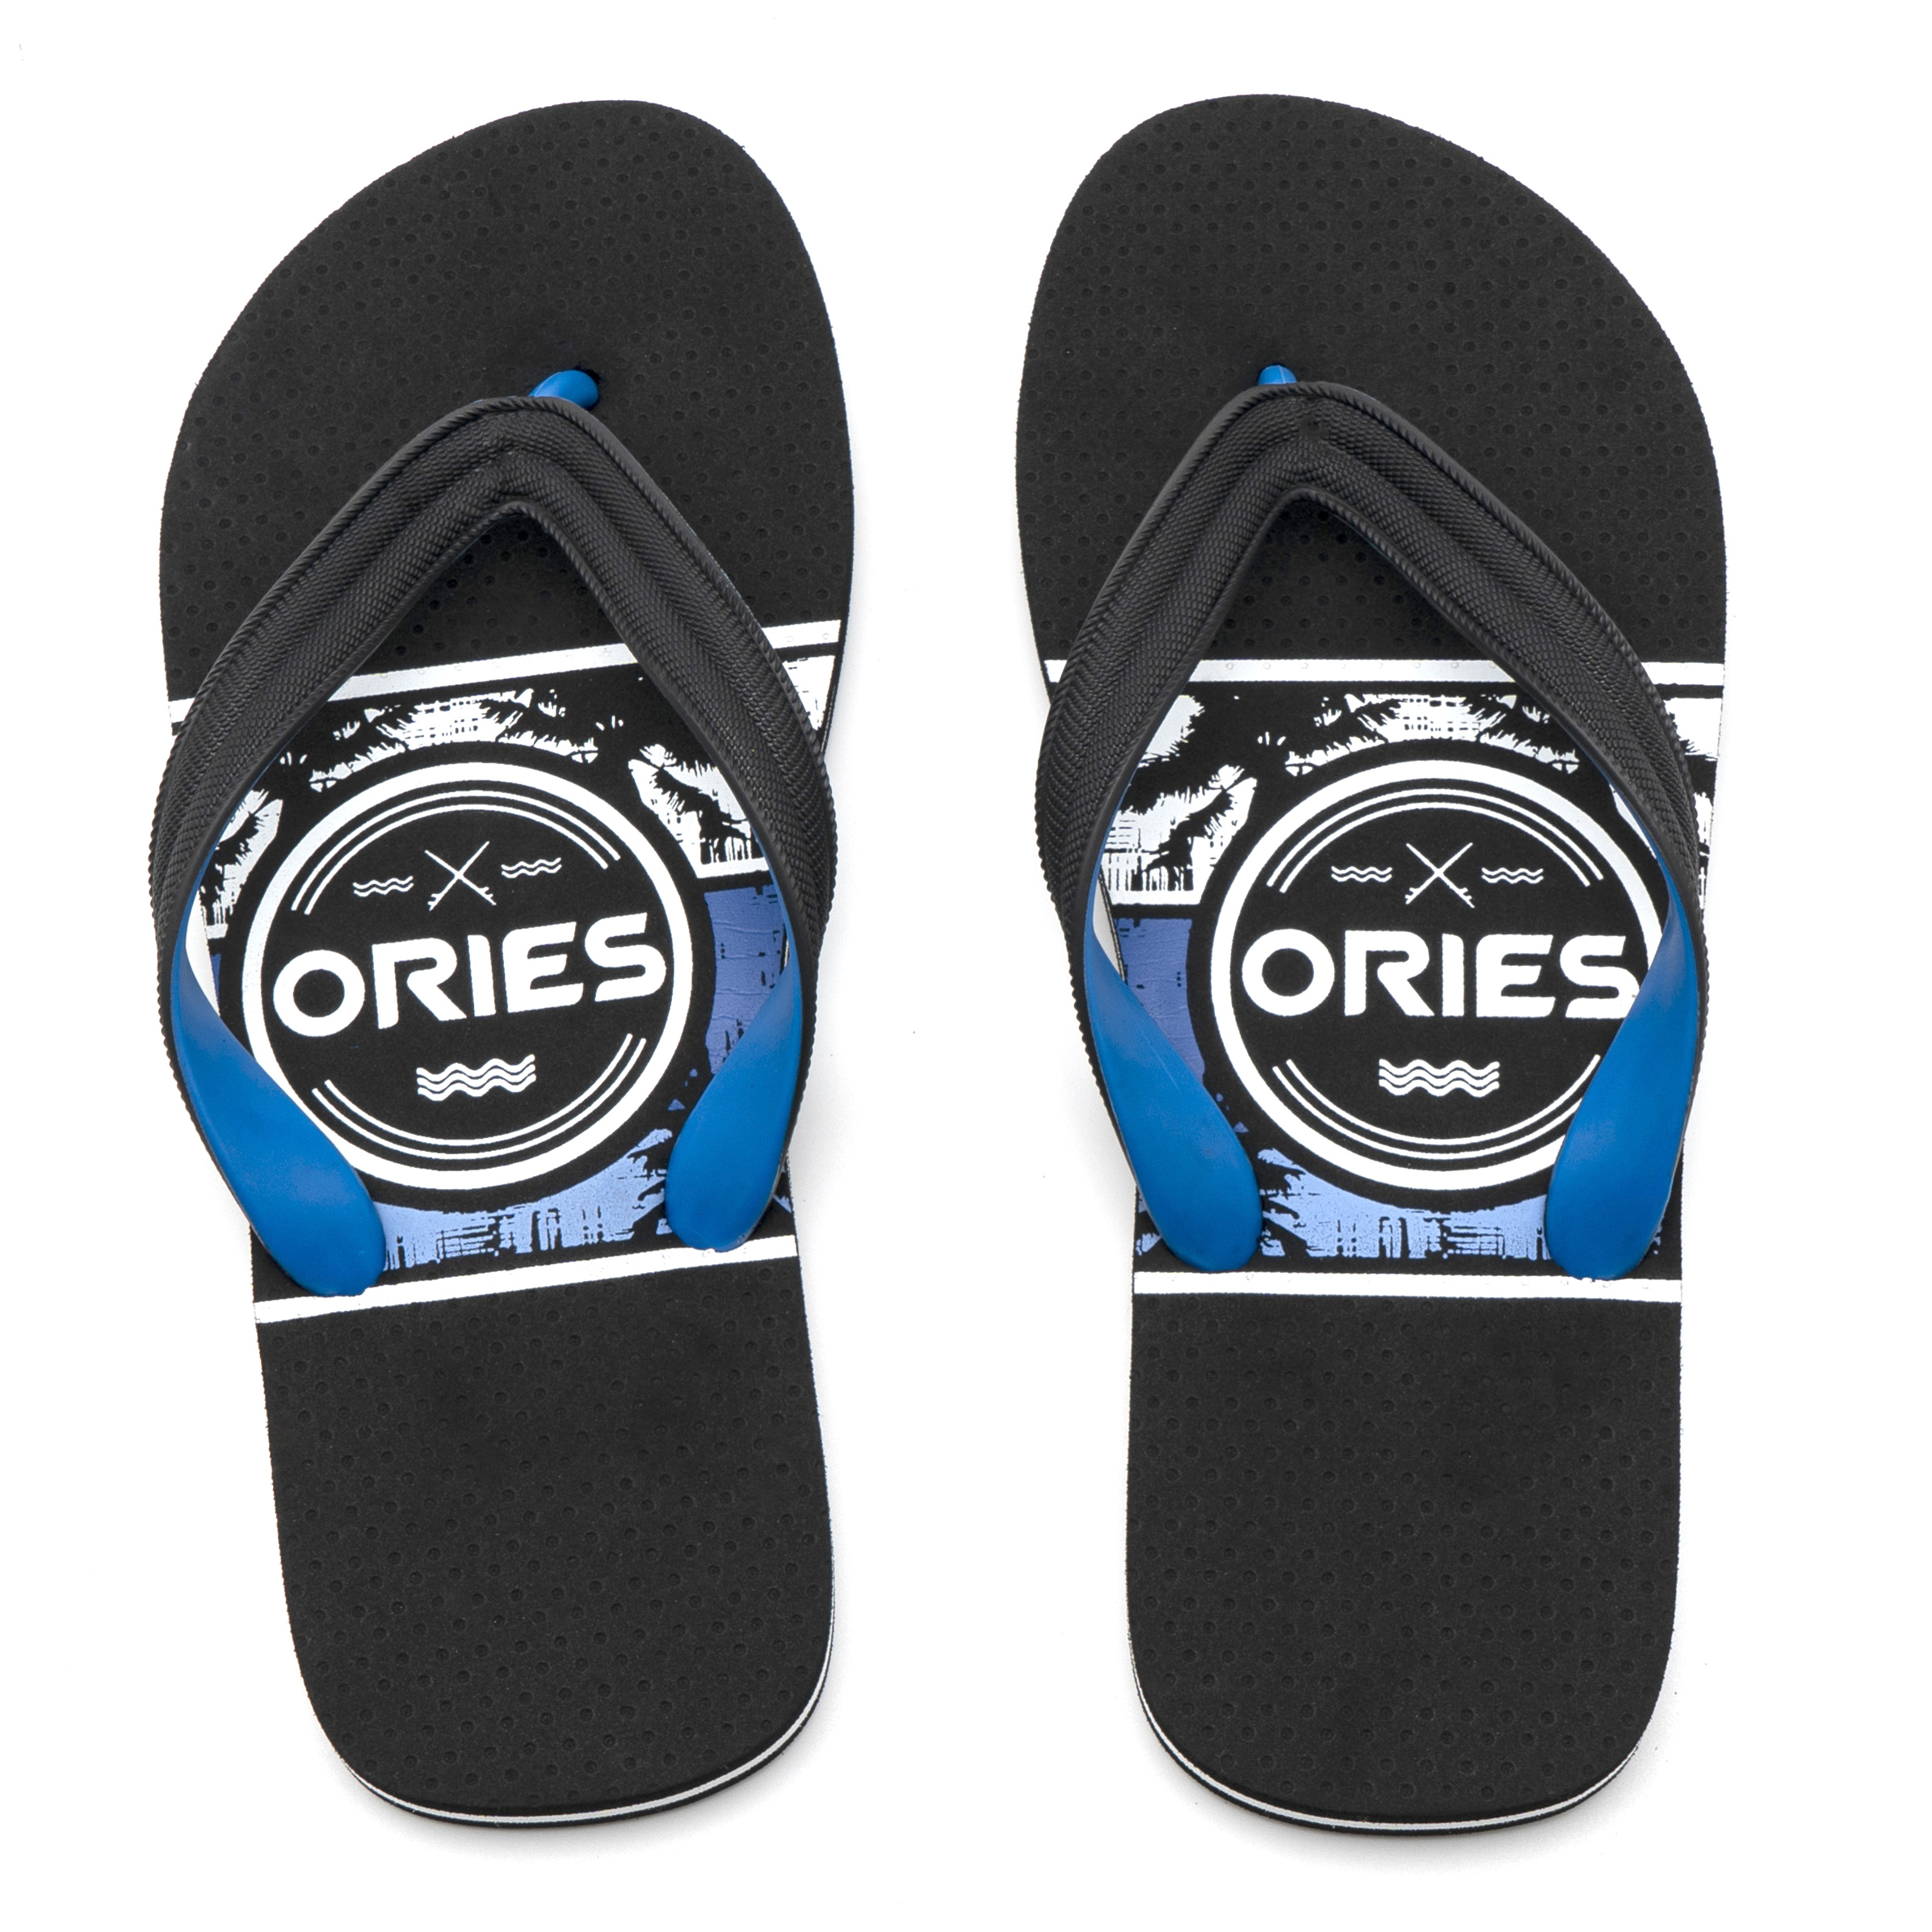 Summer Beach Flip-flops Slippers Cheap Wholesale Custom Flip Flops